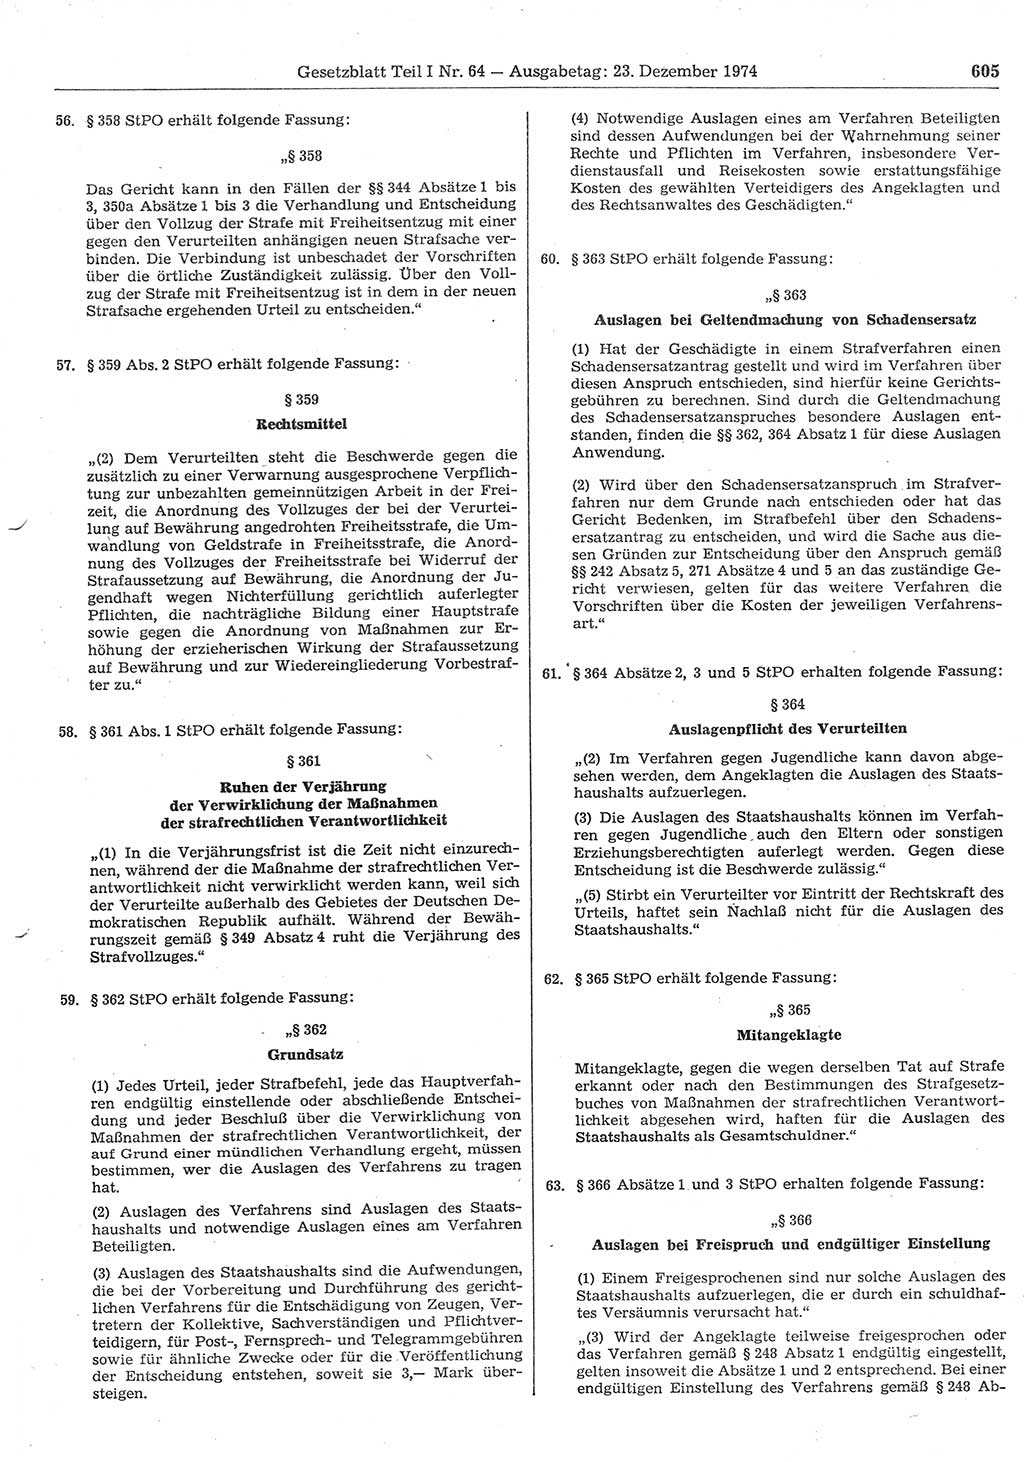 Gesetzblatt (GBl.) der Deutschen Demokratischen Republik (DDR) Teil Ⅰ 1974, Seite 605 (GBl. DDR Ⅰ 1974, S. 605)